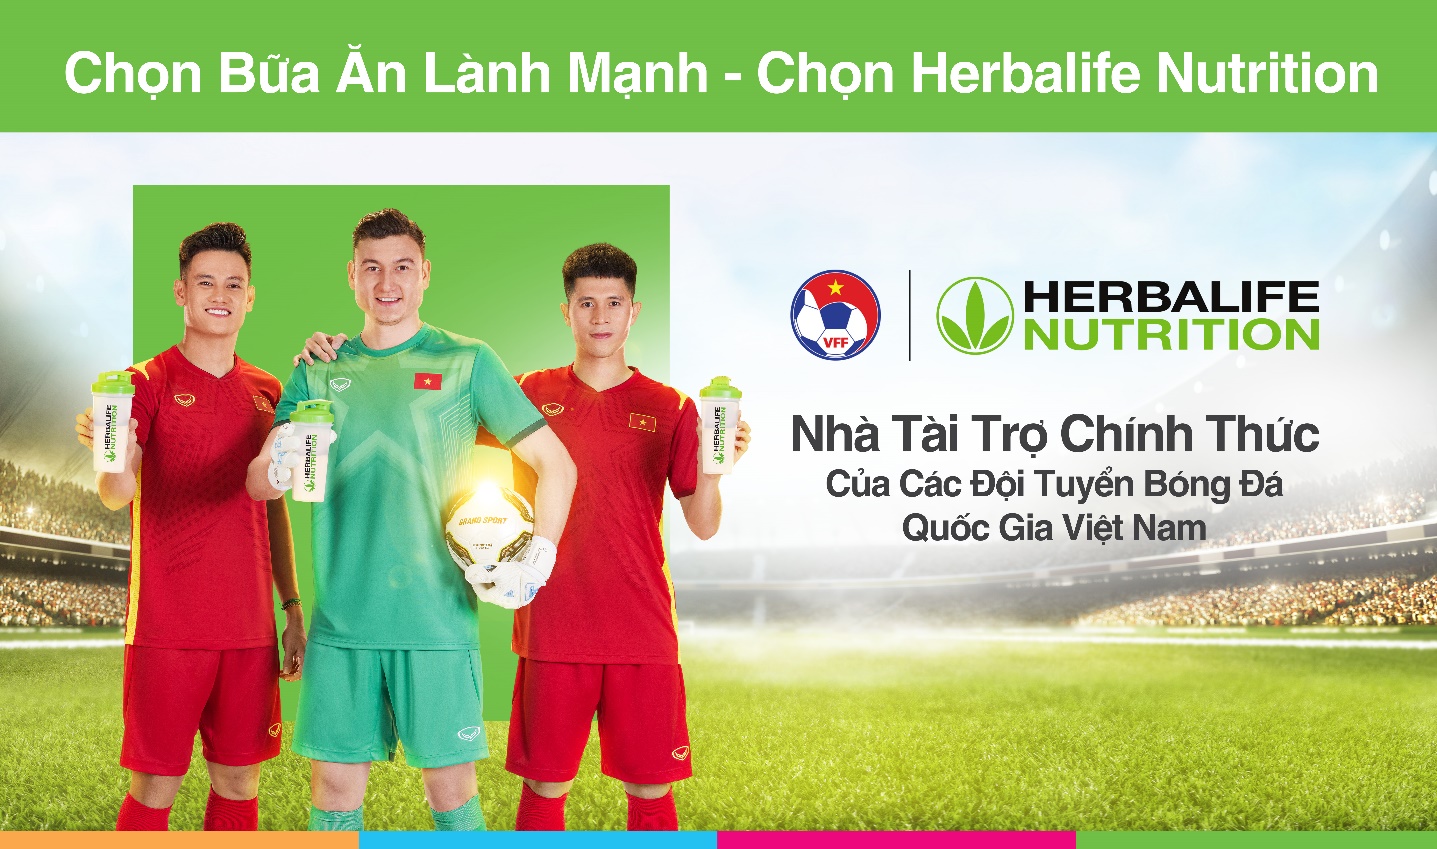 13 năm xây dựng thương hiệu dinh dưỡng tại Việt Nam của Herbalife Nutrition - Ảnh 1.